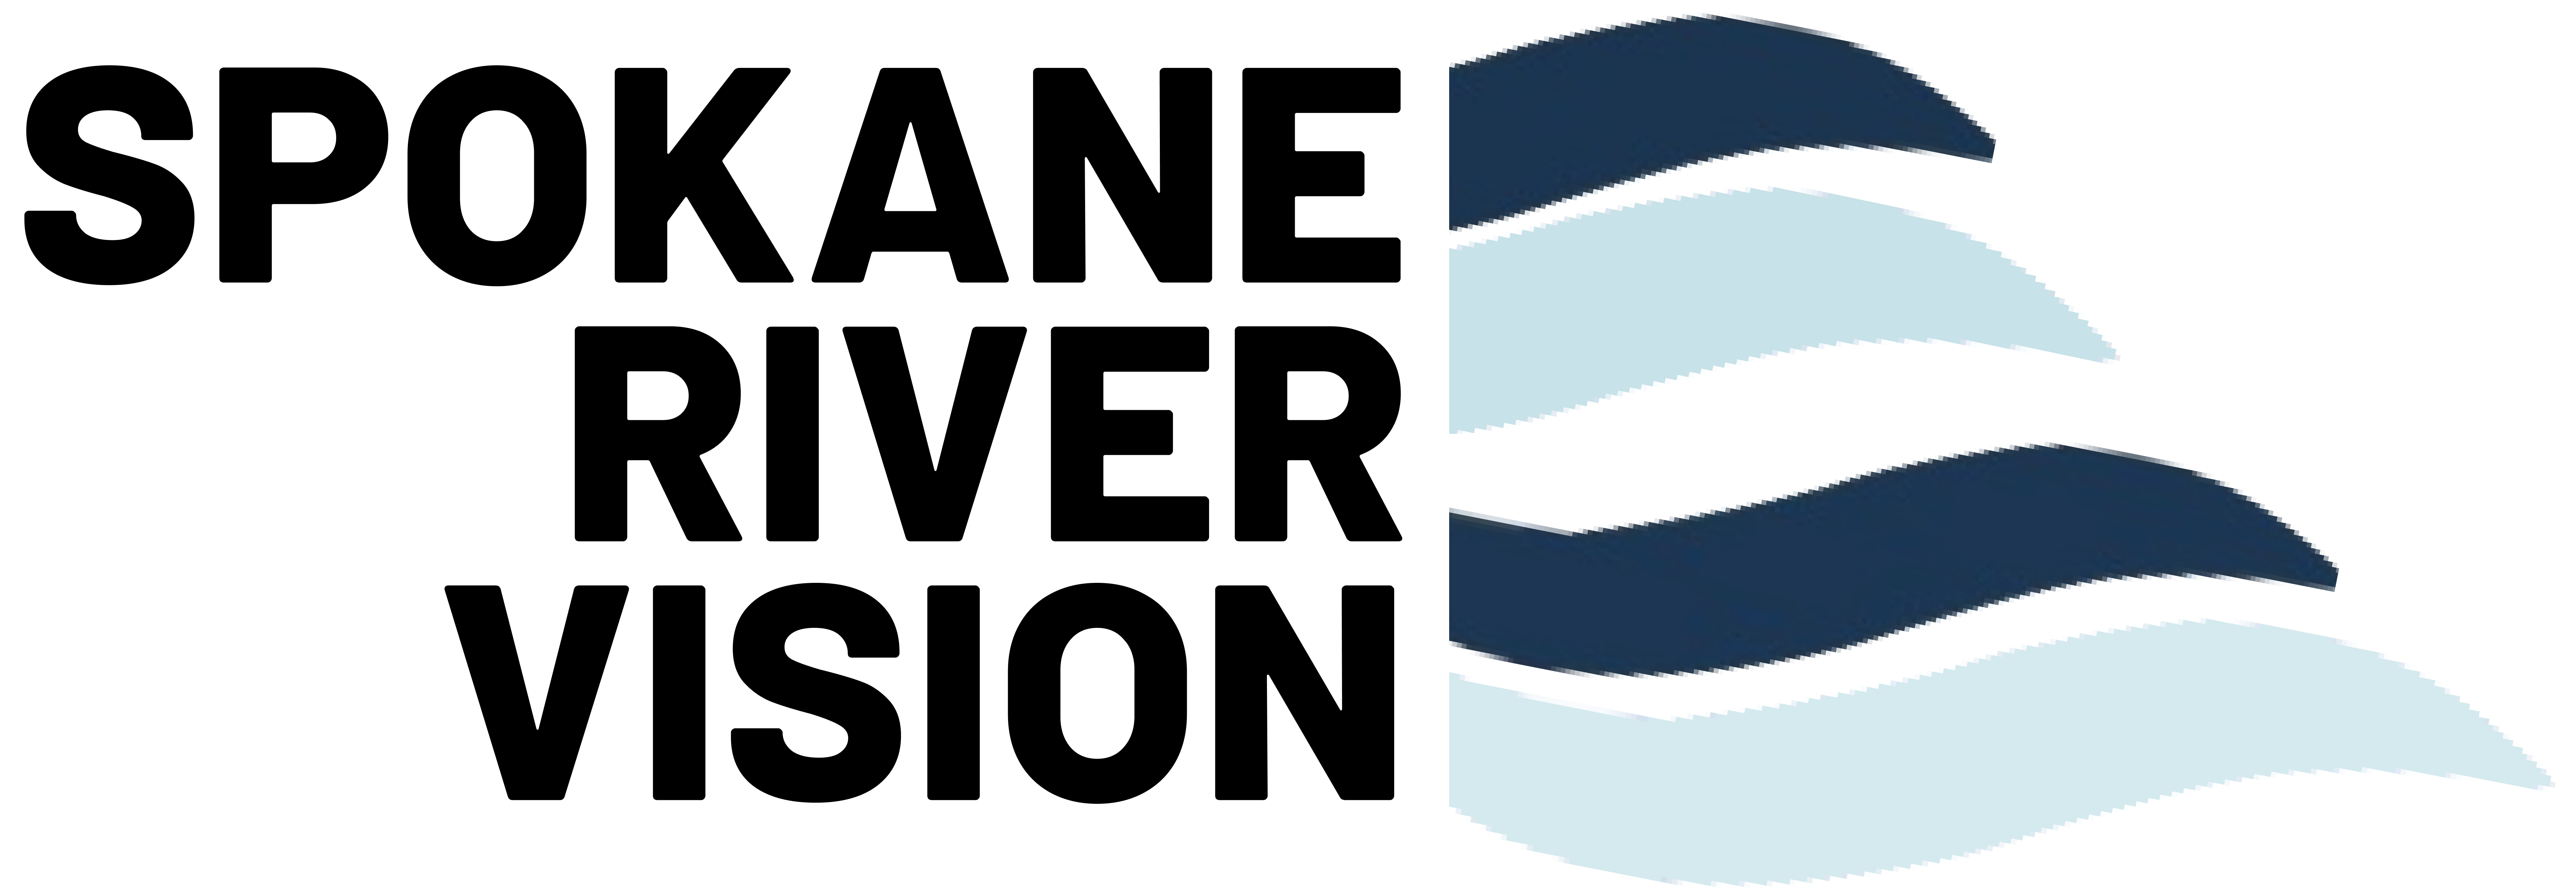 Spokane River Vision